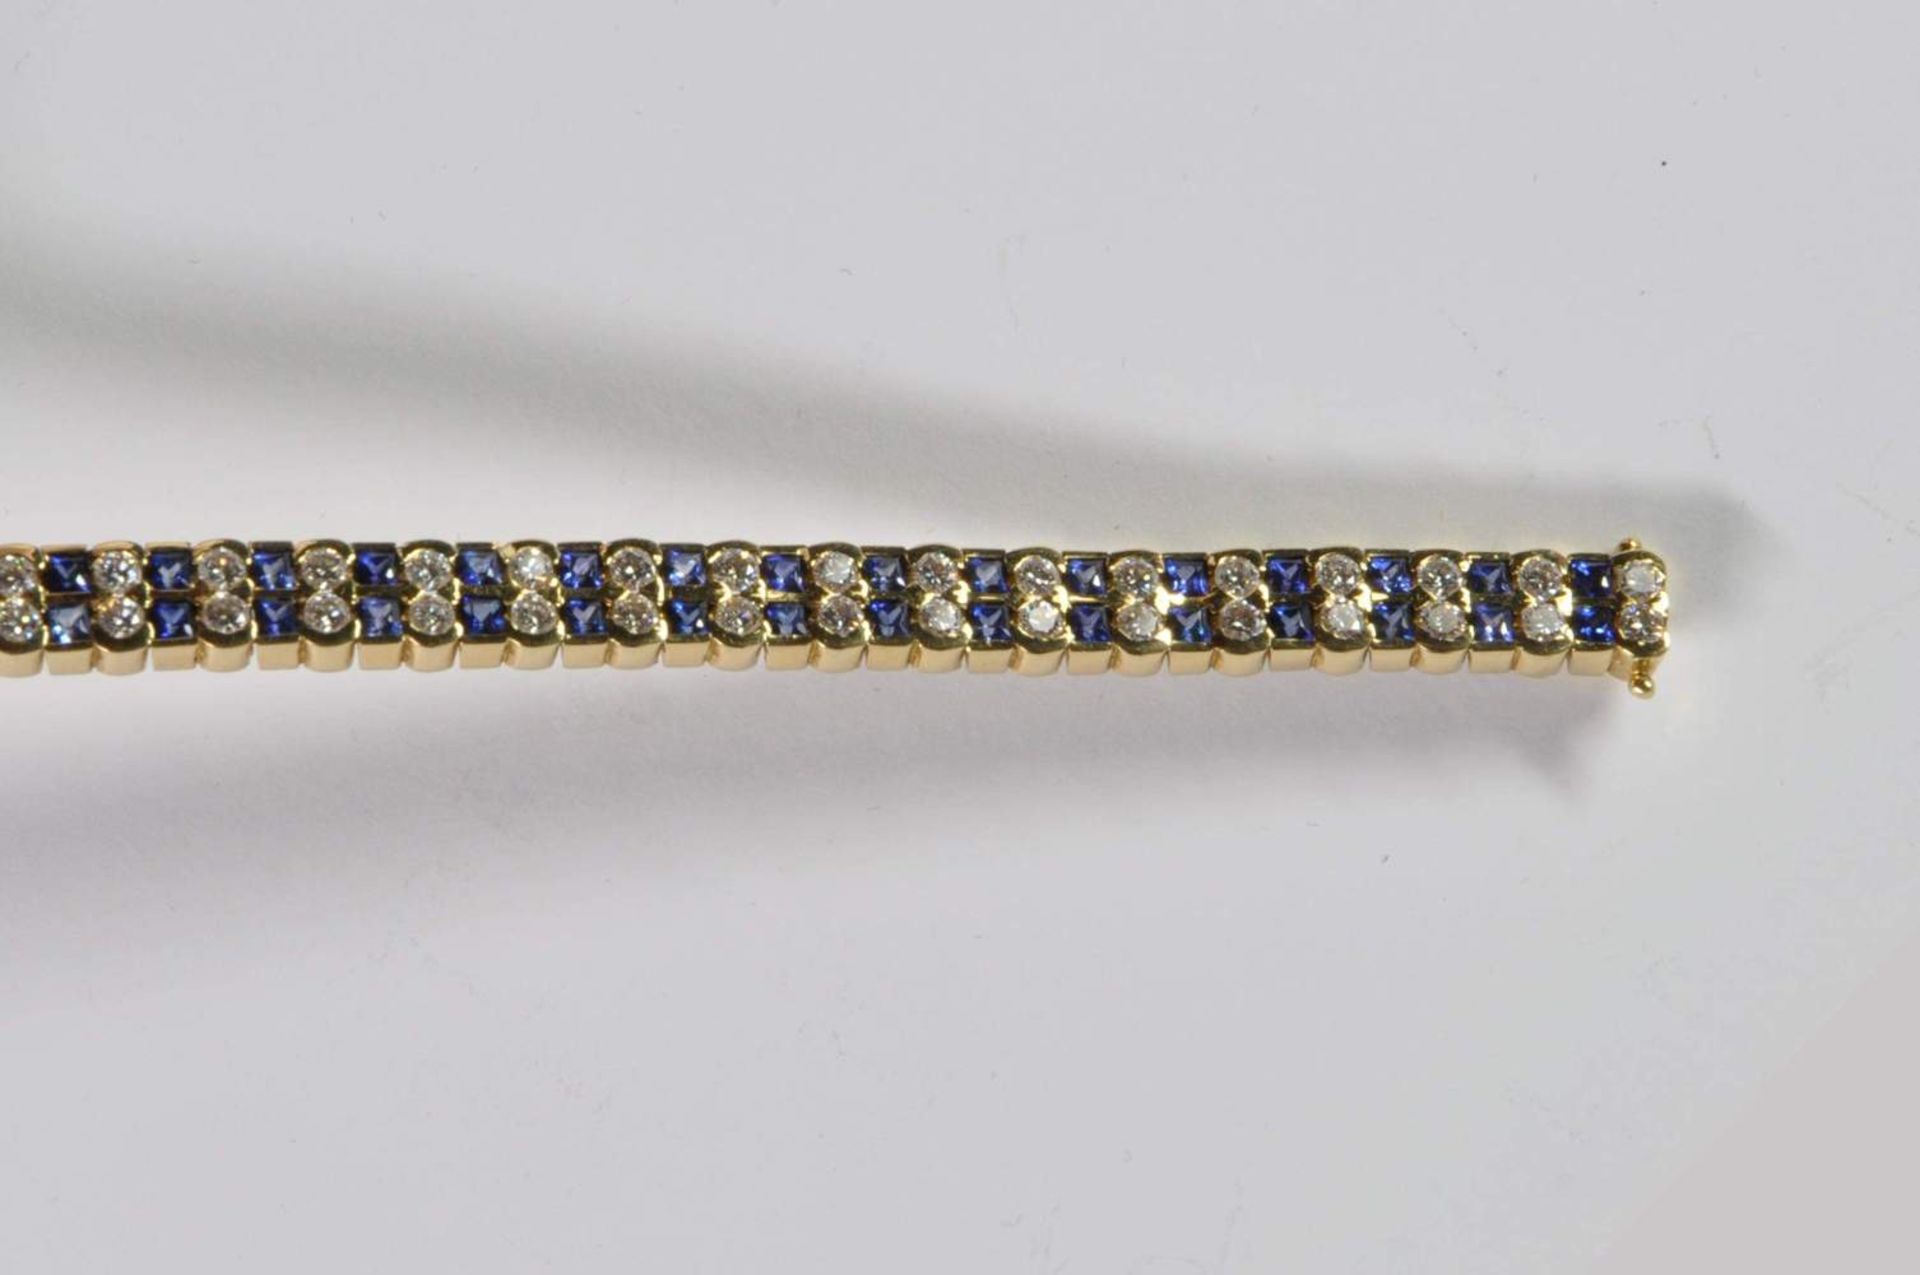 Saphir-Brillant-Armband, 750 Gelbgold, Punze, 66 Brillanten von zus. ca. 3,2ct, 64 Saphiren von zus. - Bild 4 aus 20